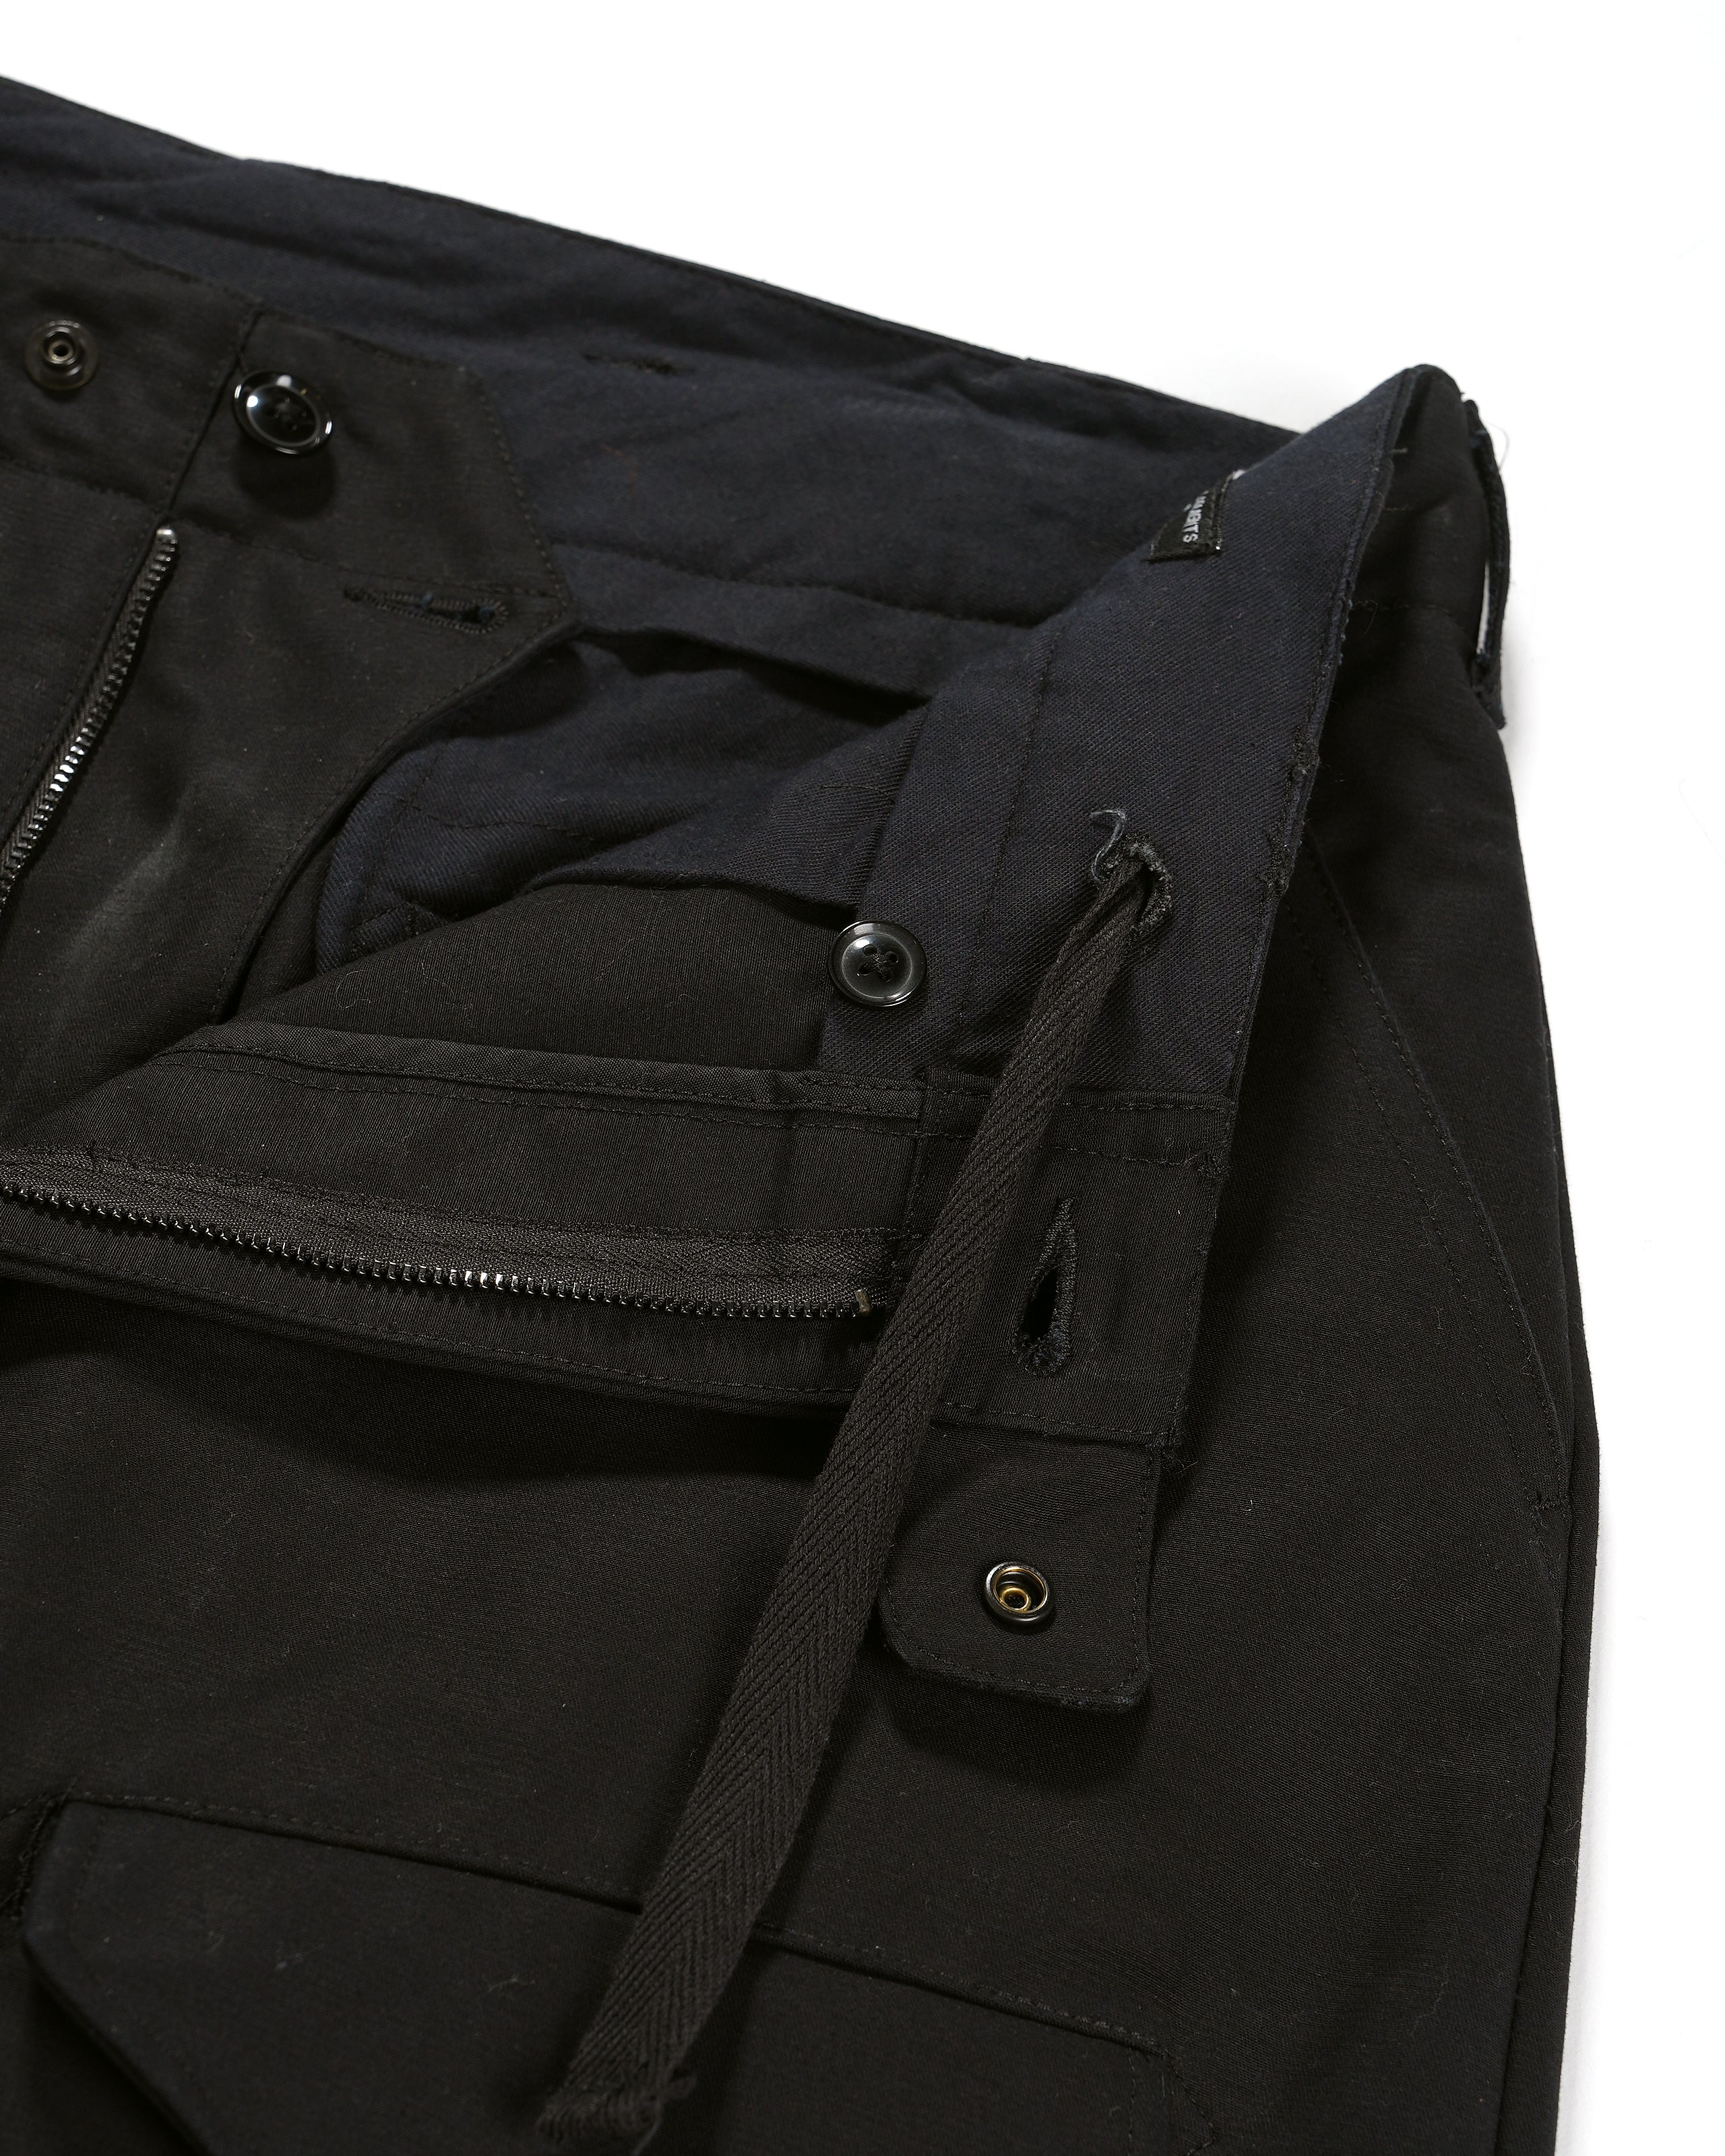 Airborne Pant - Black Cotton Double Cloth